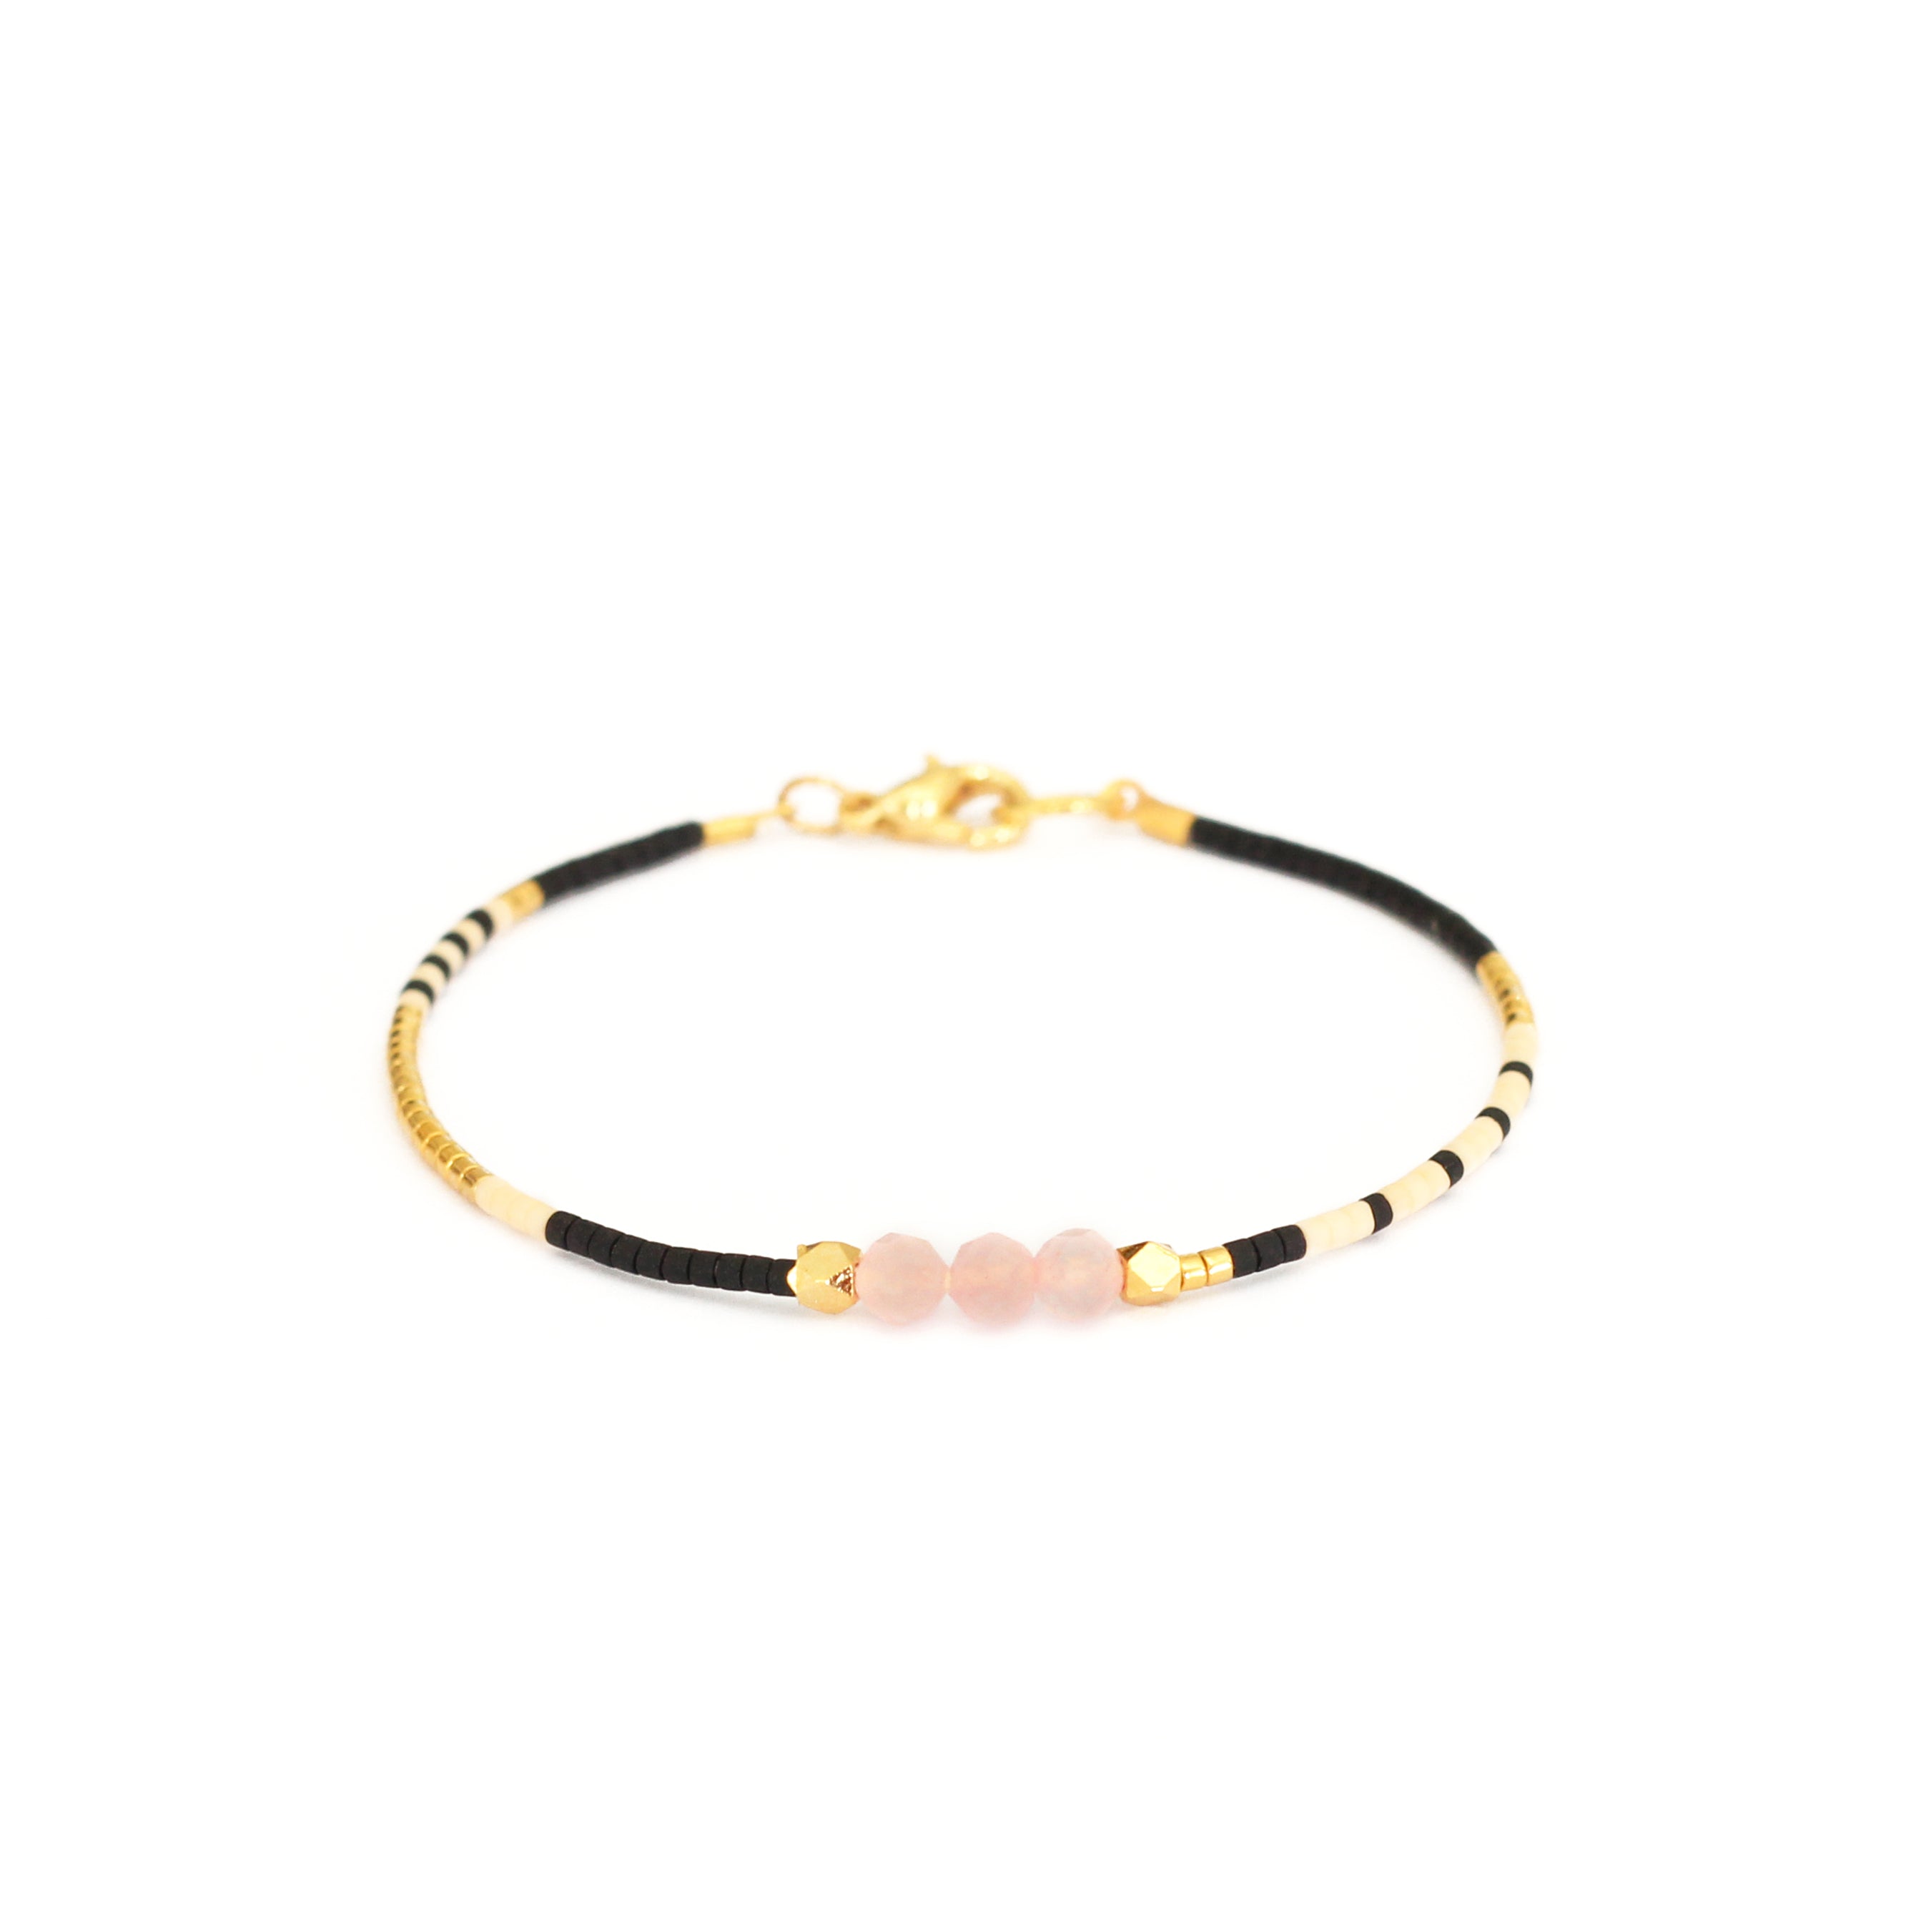 Black, white and gold beaded pink quartz bracelet